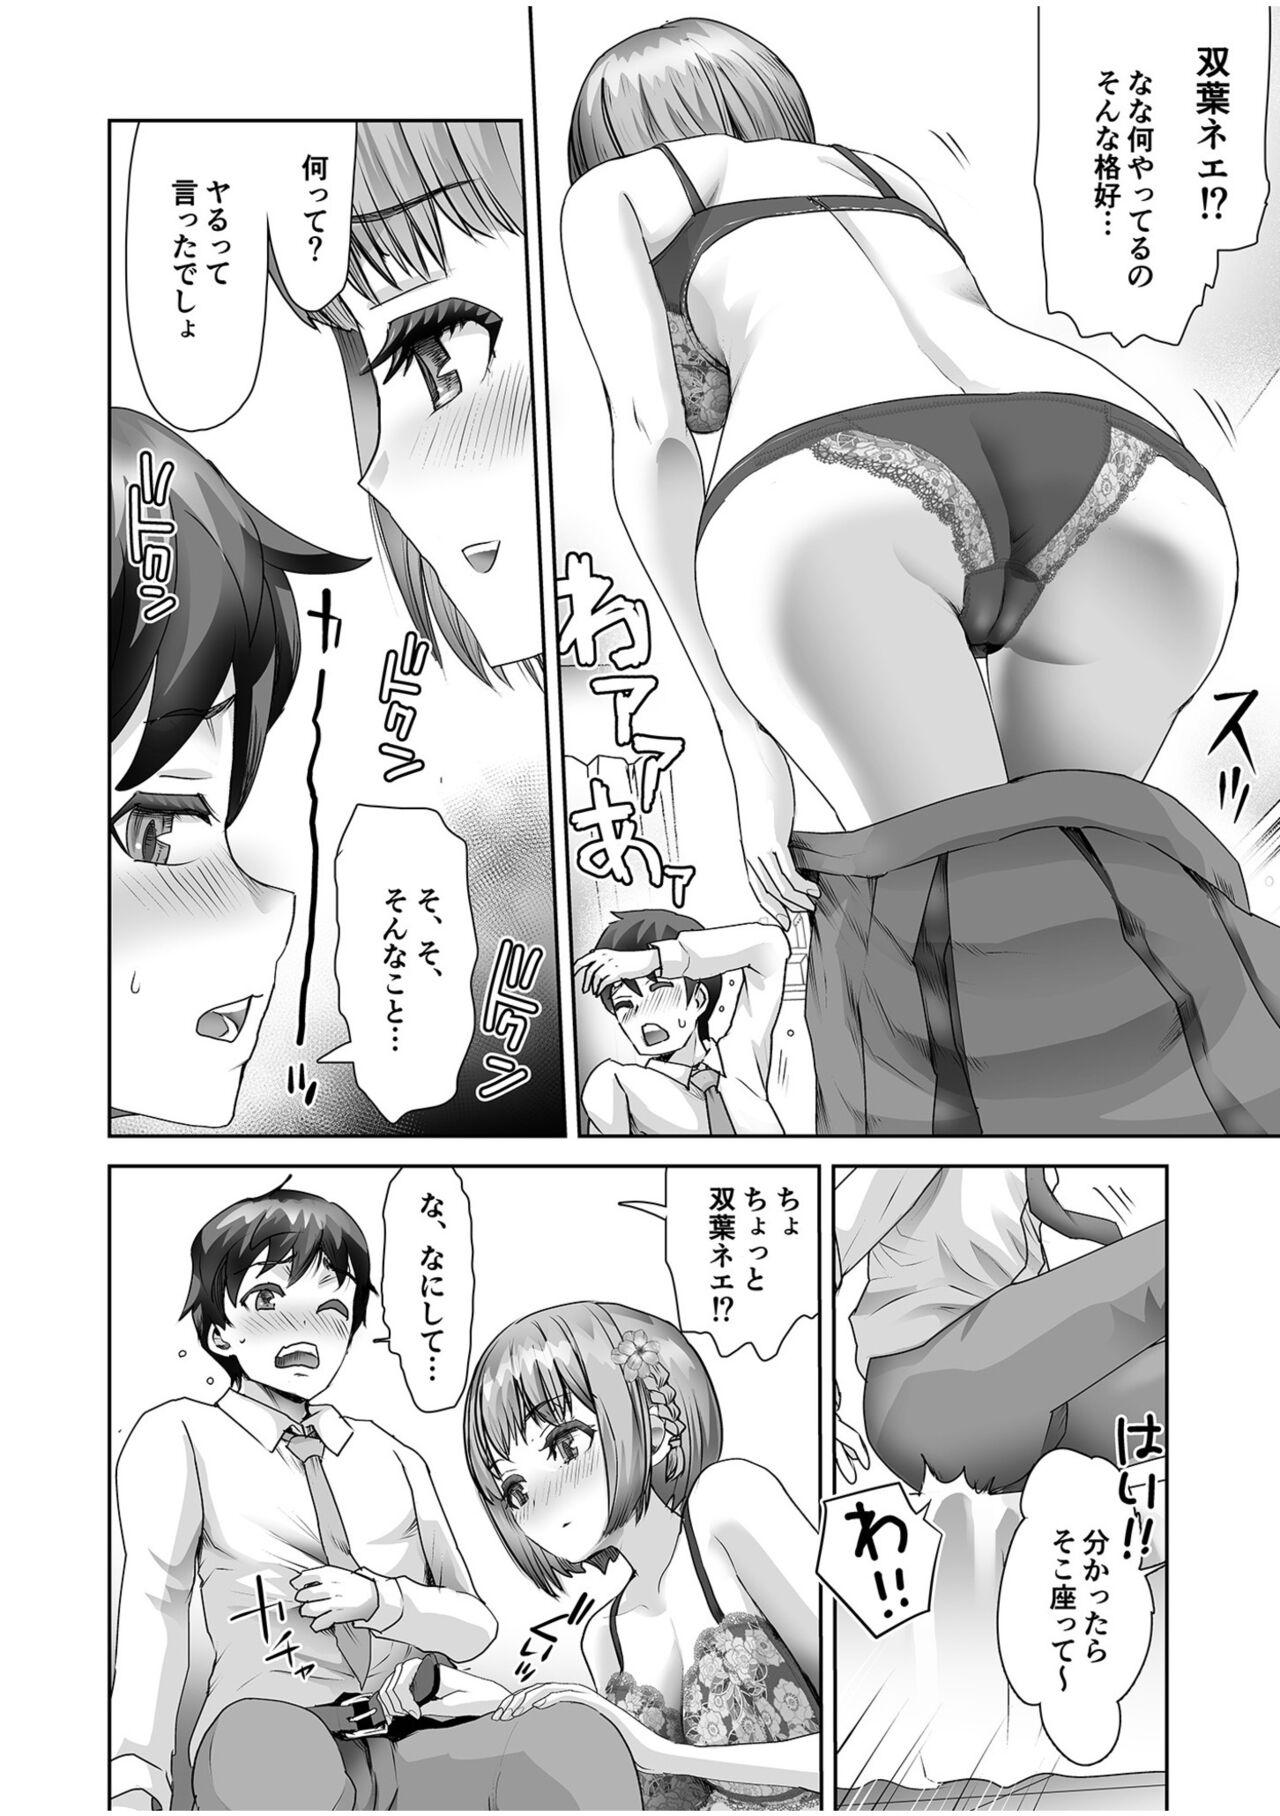 Erotic Maid Mimi Japan 193